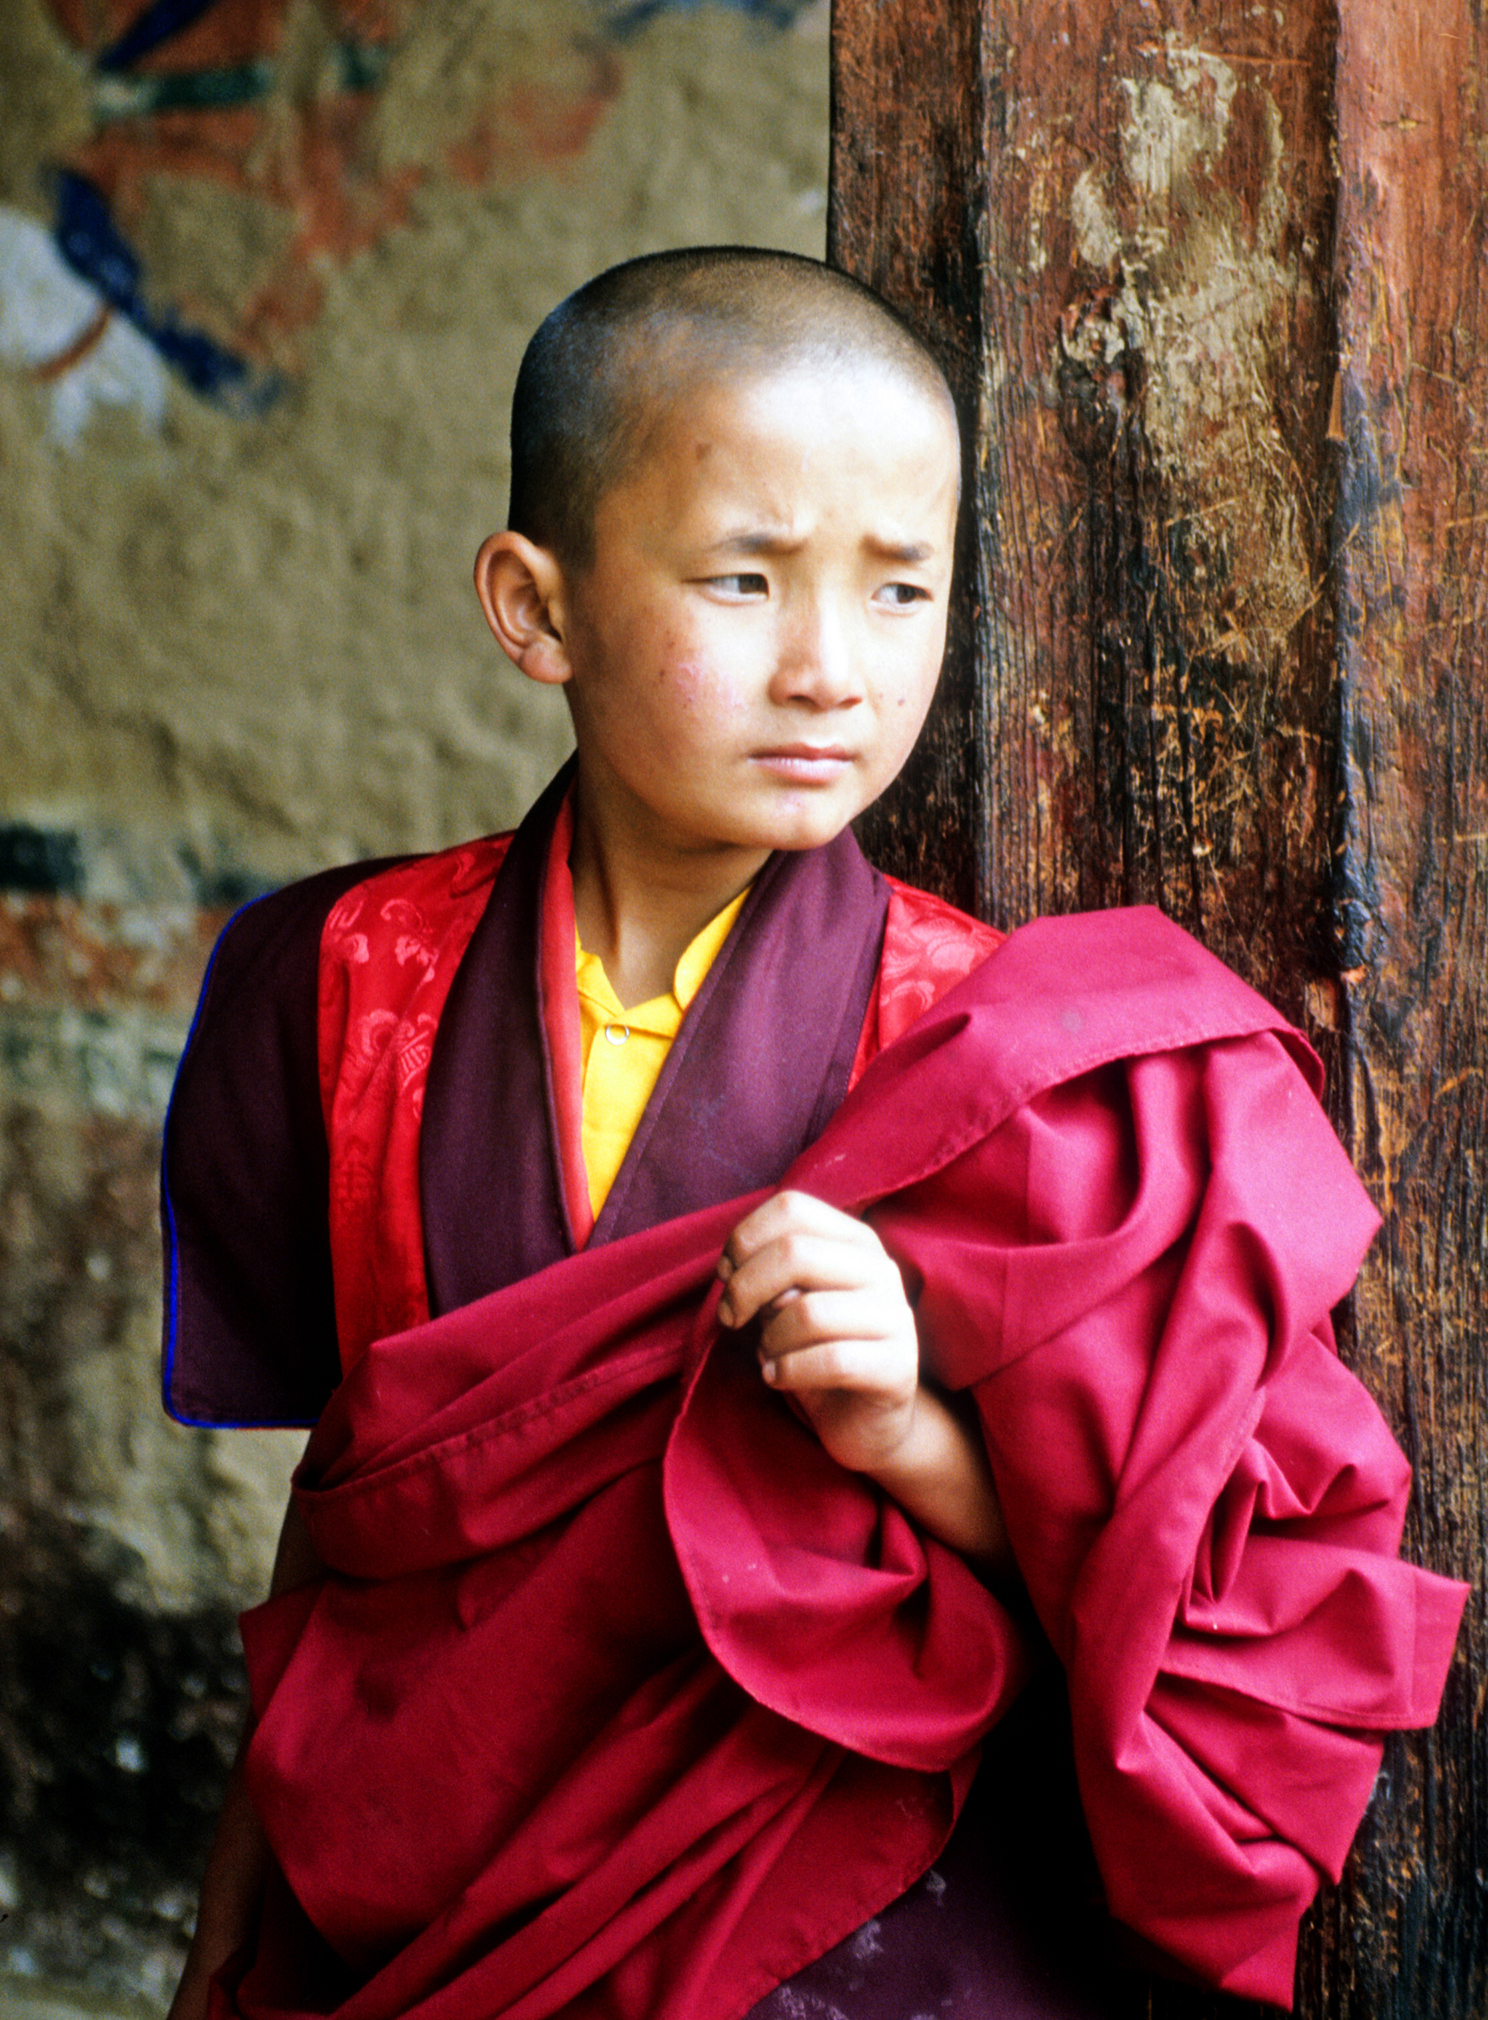 Terry Brandt: Young Monk - Paro, Bhutan